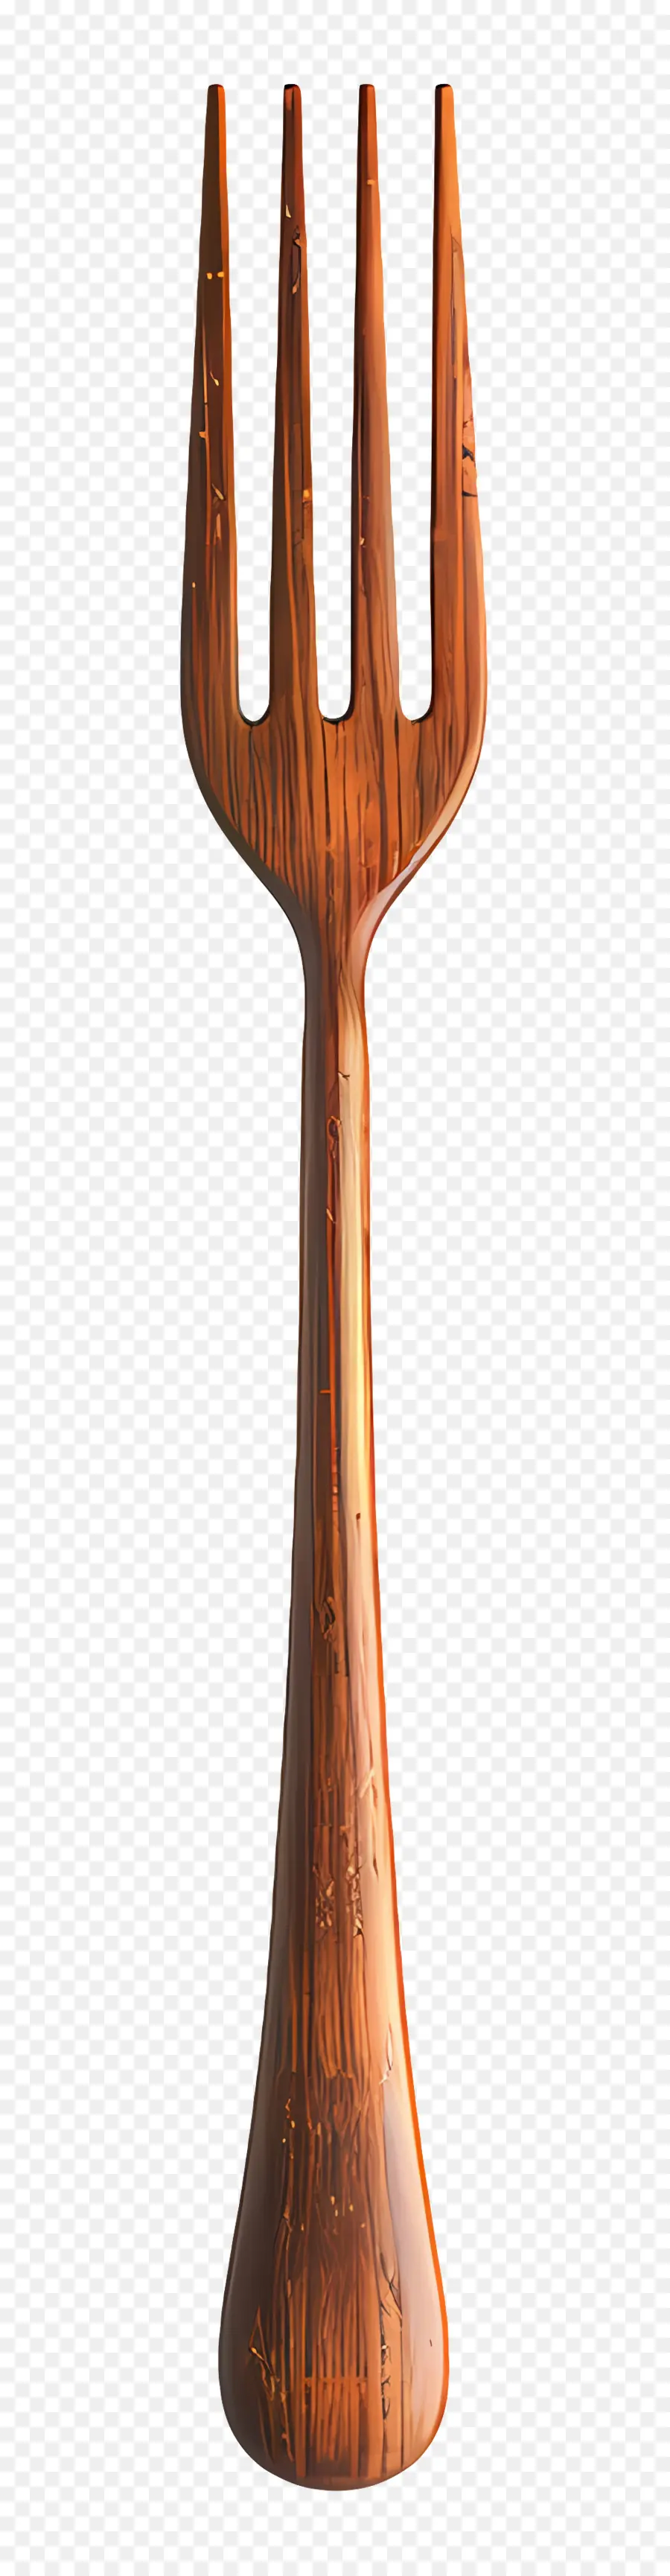 punteggiatura in legno di legno a forcella intagliato in legno lucido design intricato - Intricato braccialetto in legno lucido con punte intagliate